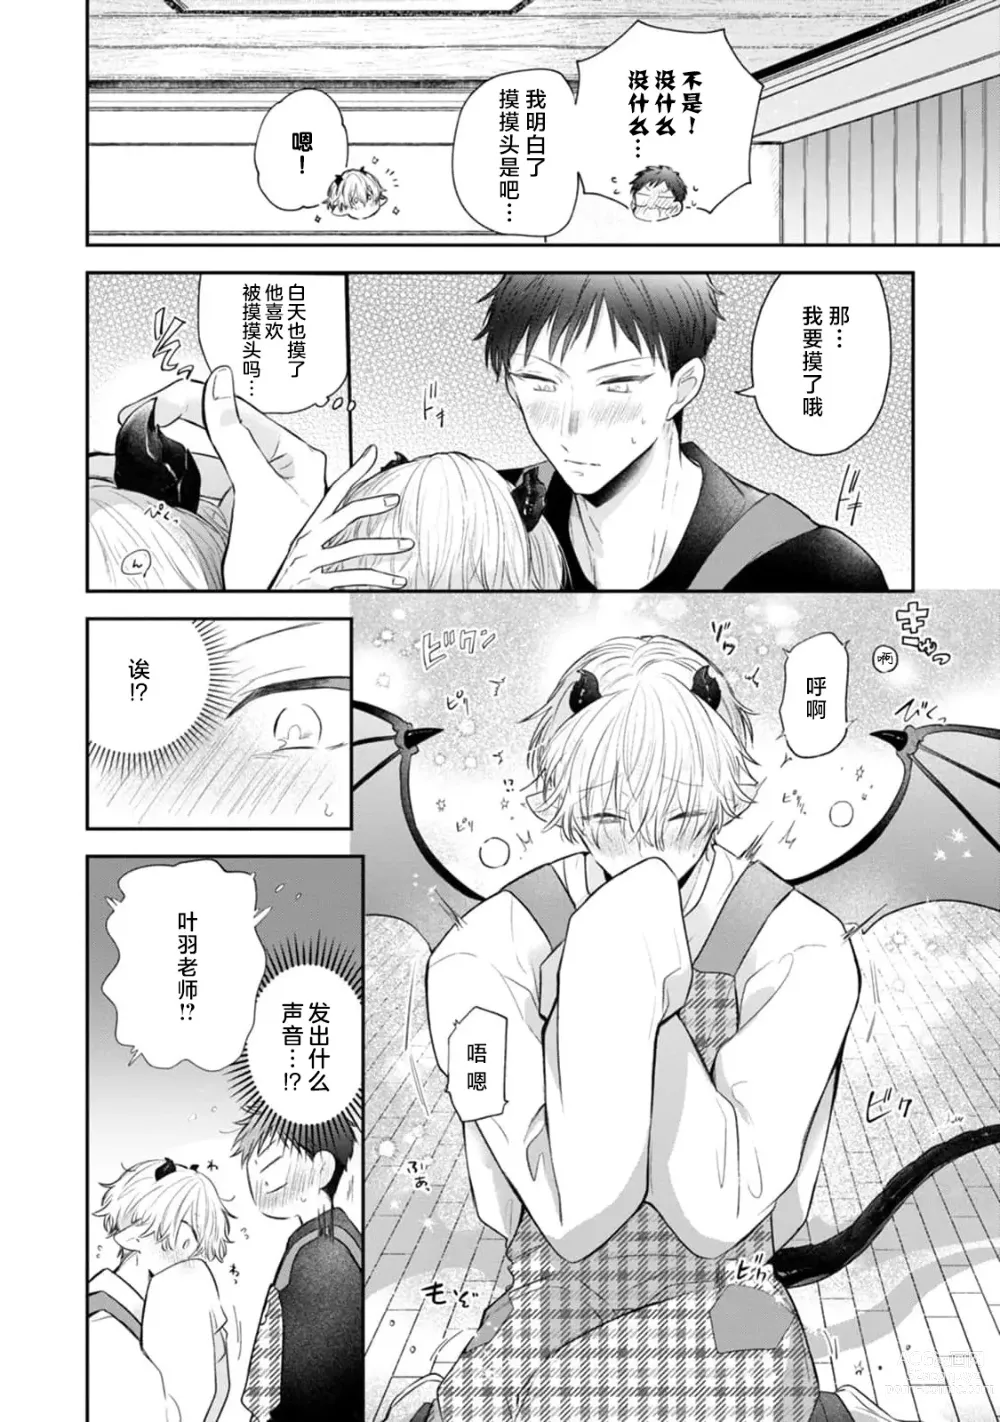 Page 26 of manga 叶羽老师全部是第一次 1-4